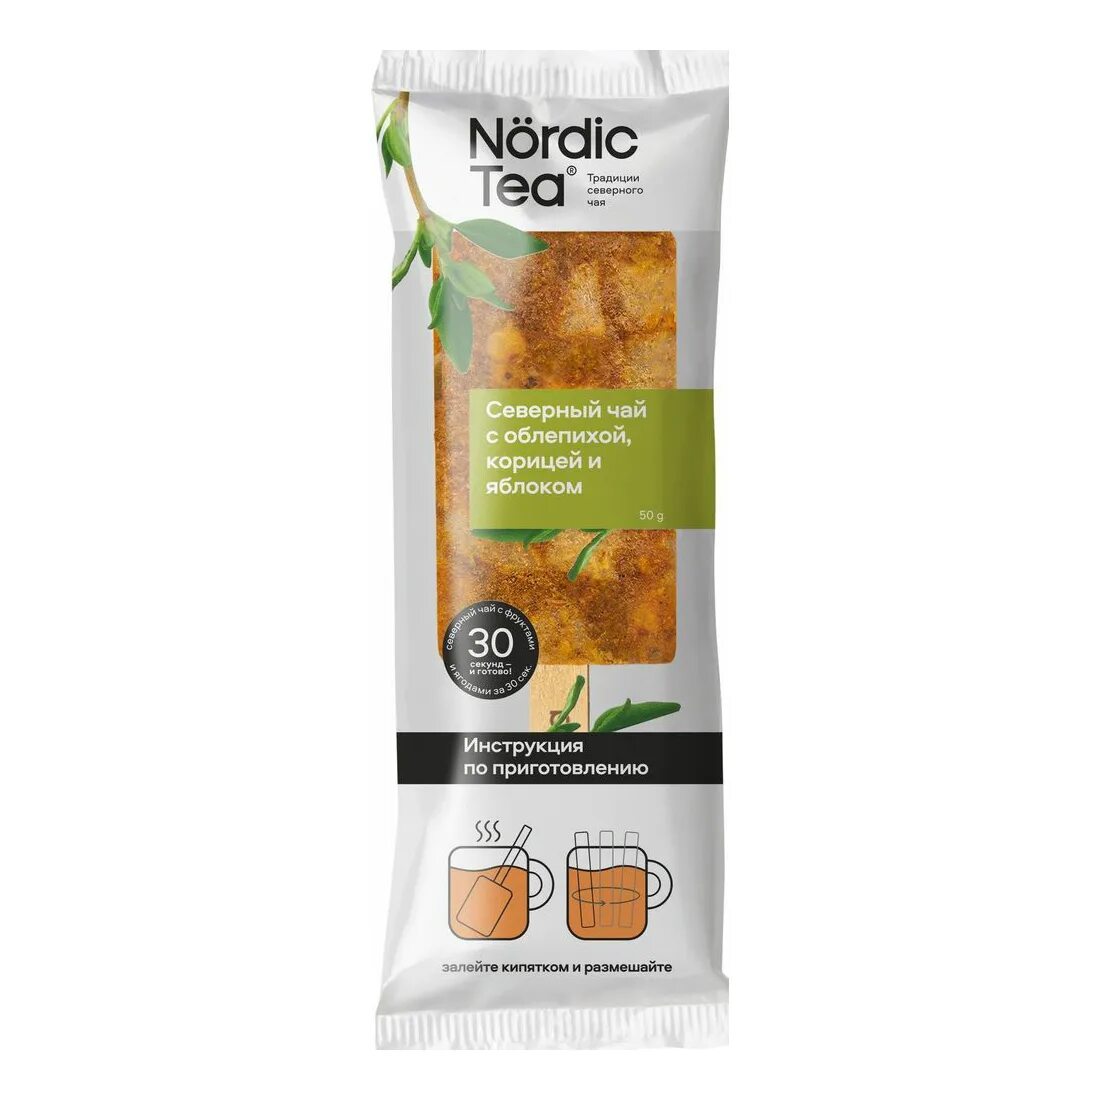 Nordic Tea облепиха. Nordic Tea замороженный чай. Nordic Tea чай заморозка. Чай замороженный на палочке Nordic Tea. Купить чай nordic